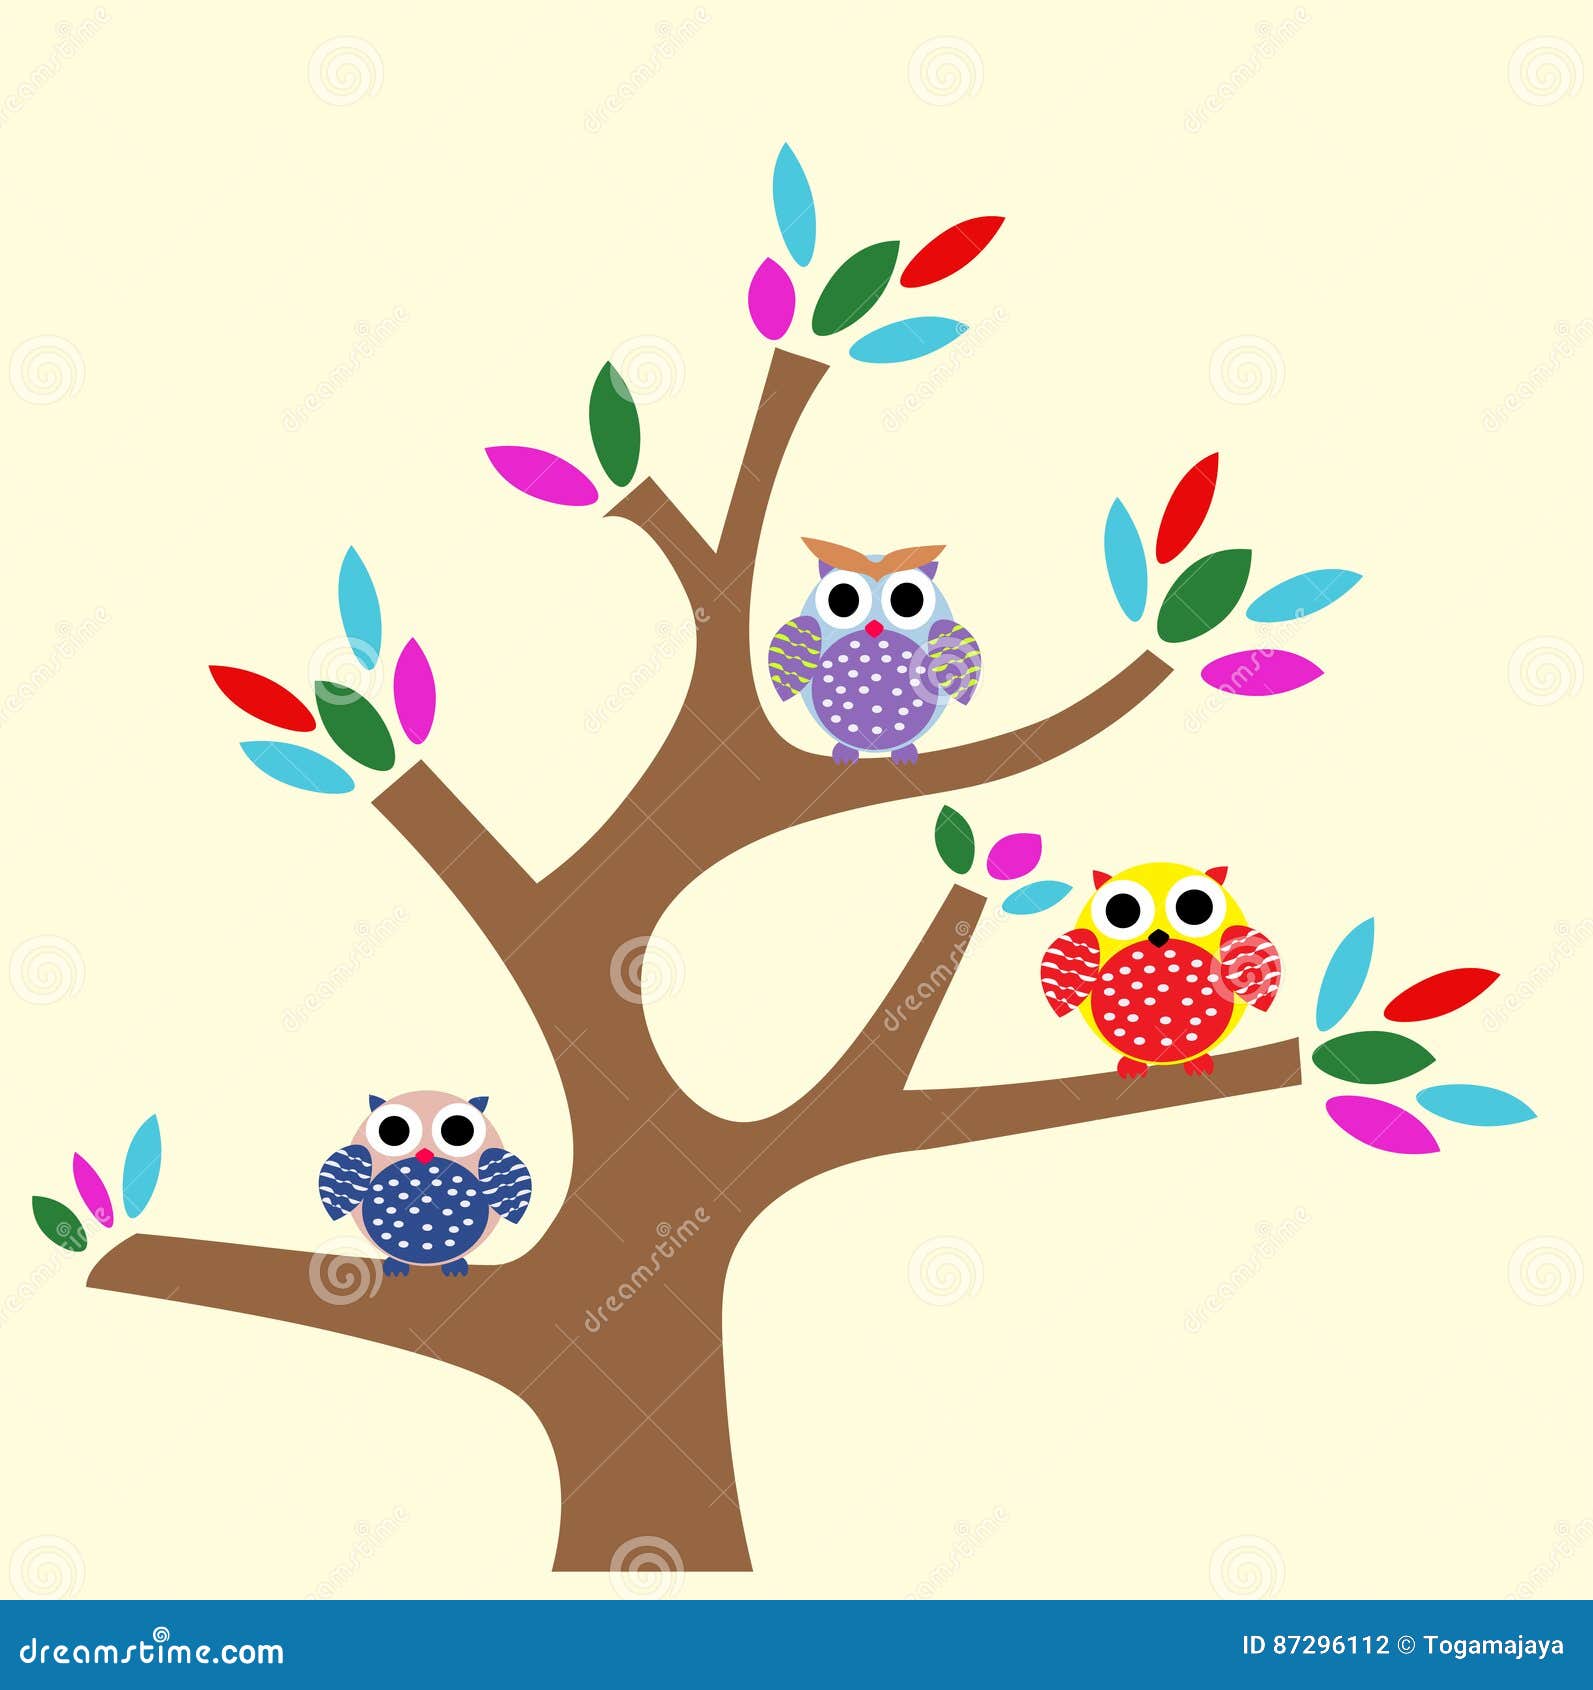 Owl At Tree Cartoon Stock Vector Illustration Of Vector